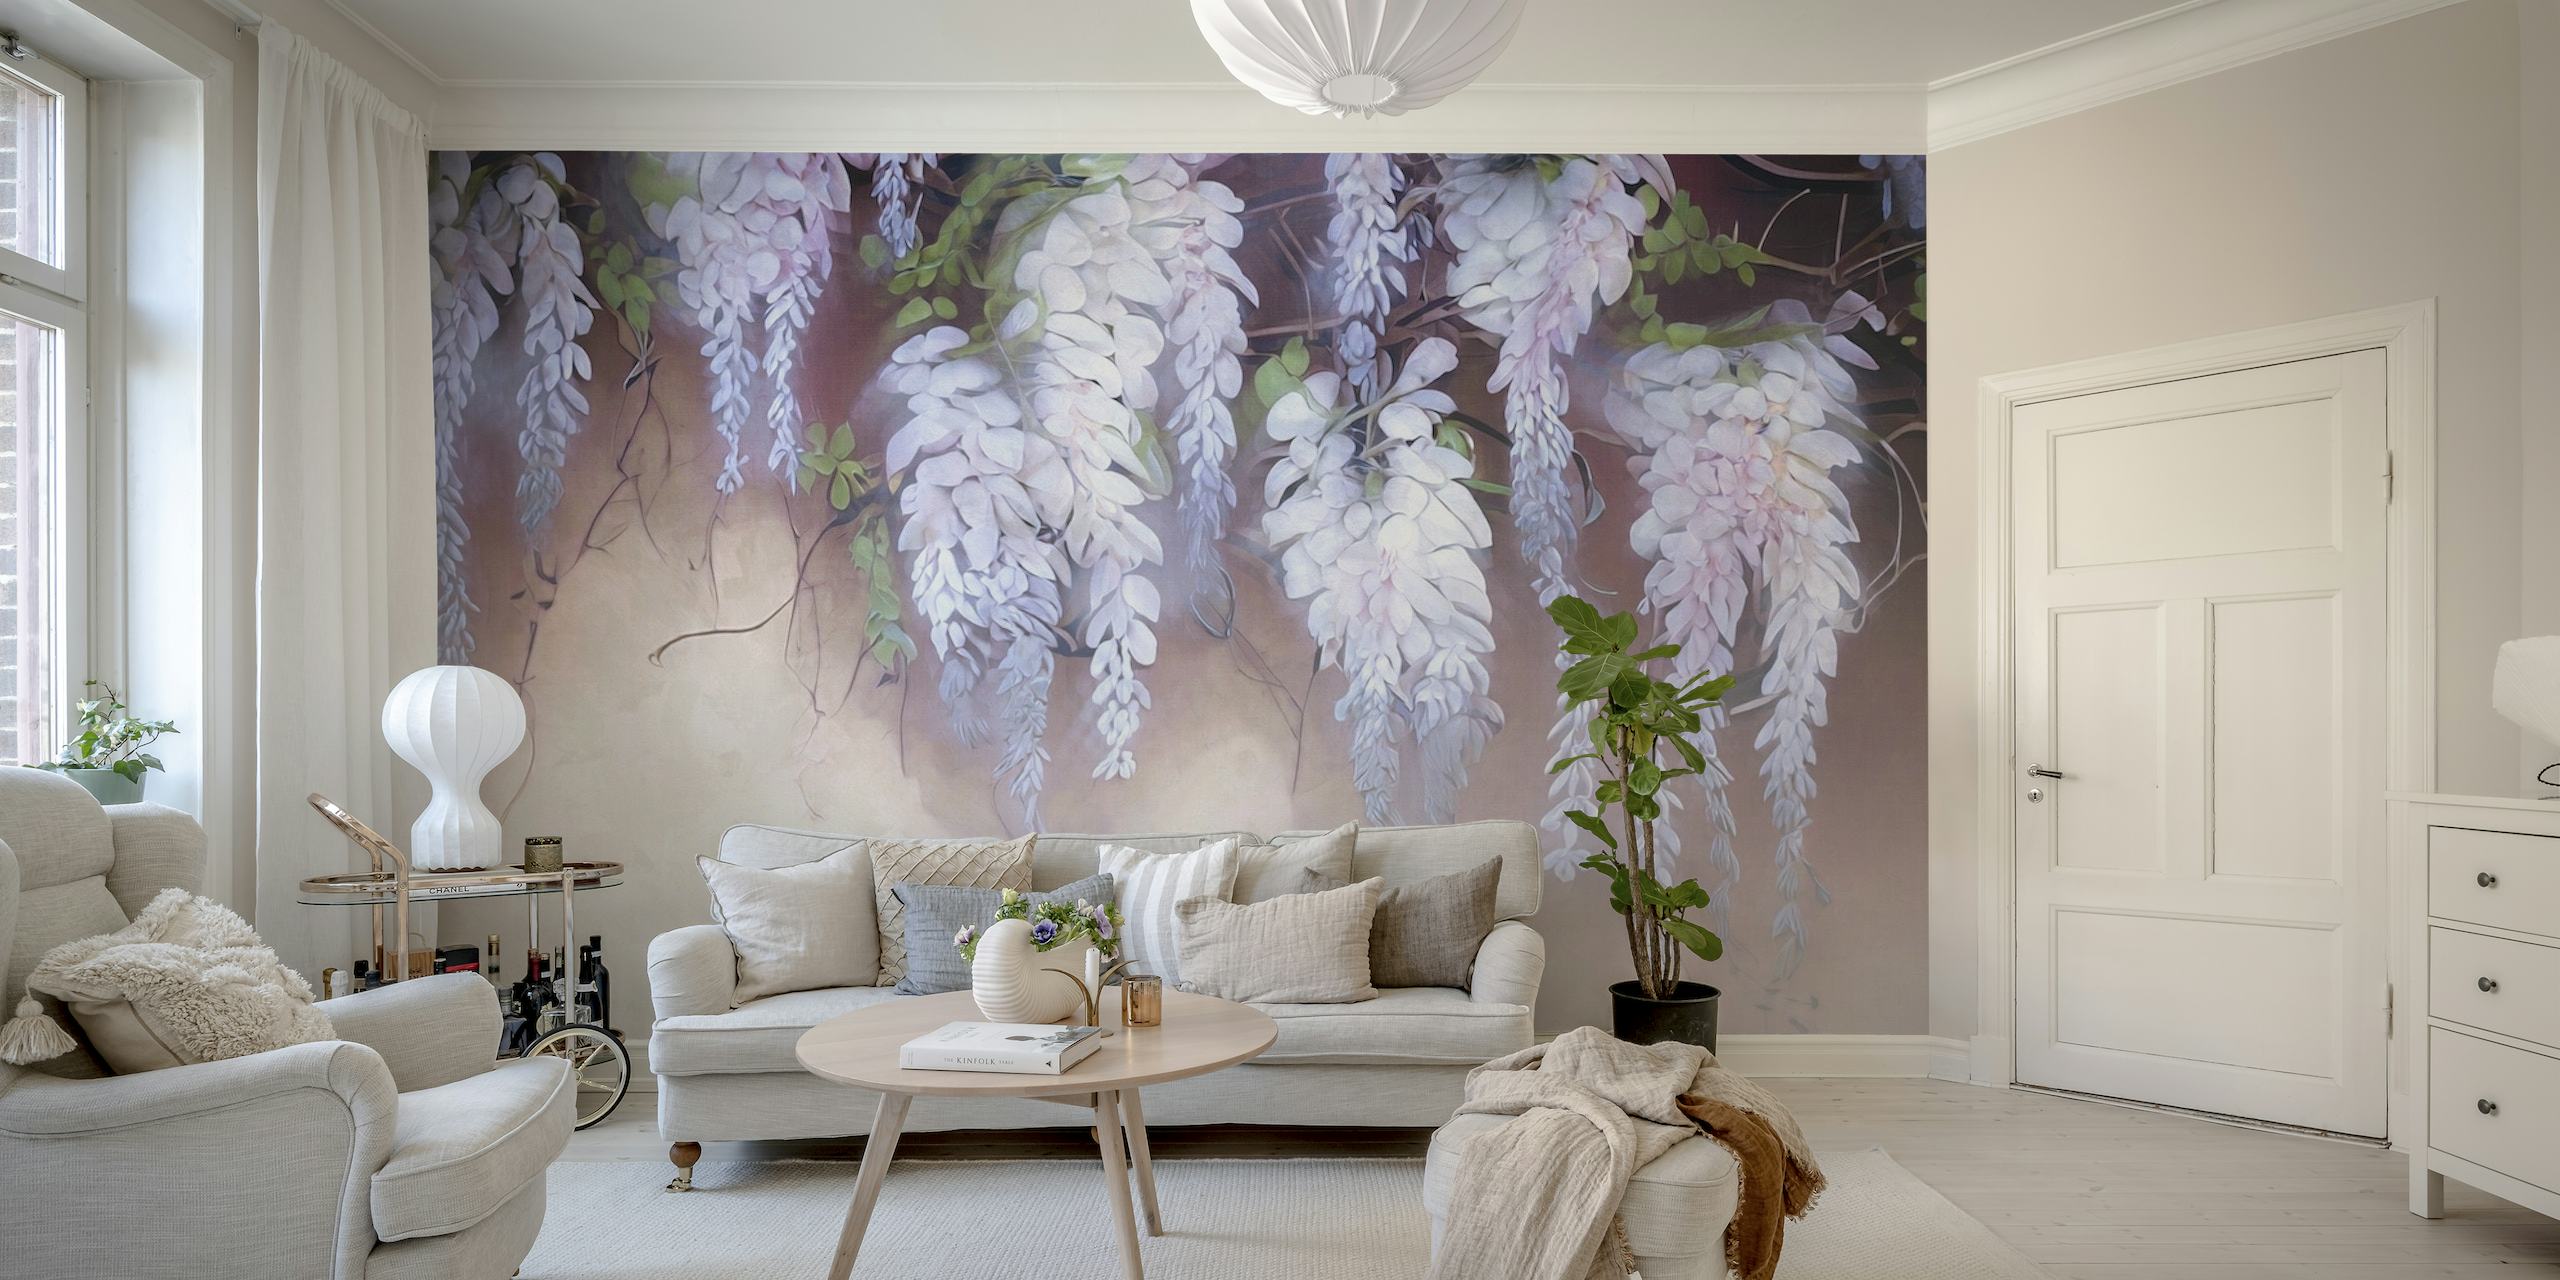 Floral wisteria wall tapeta